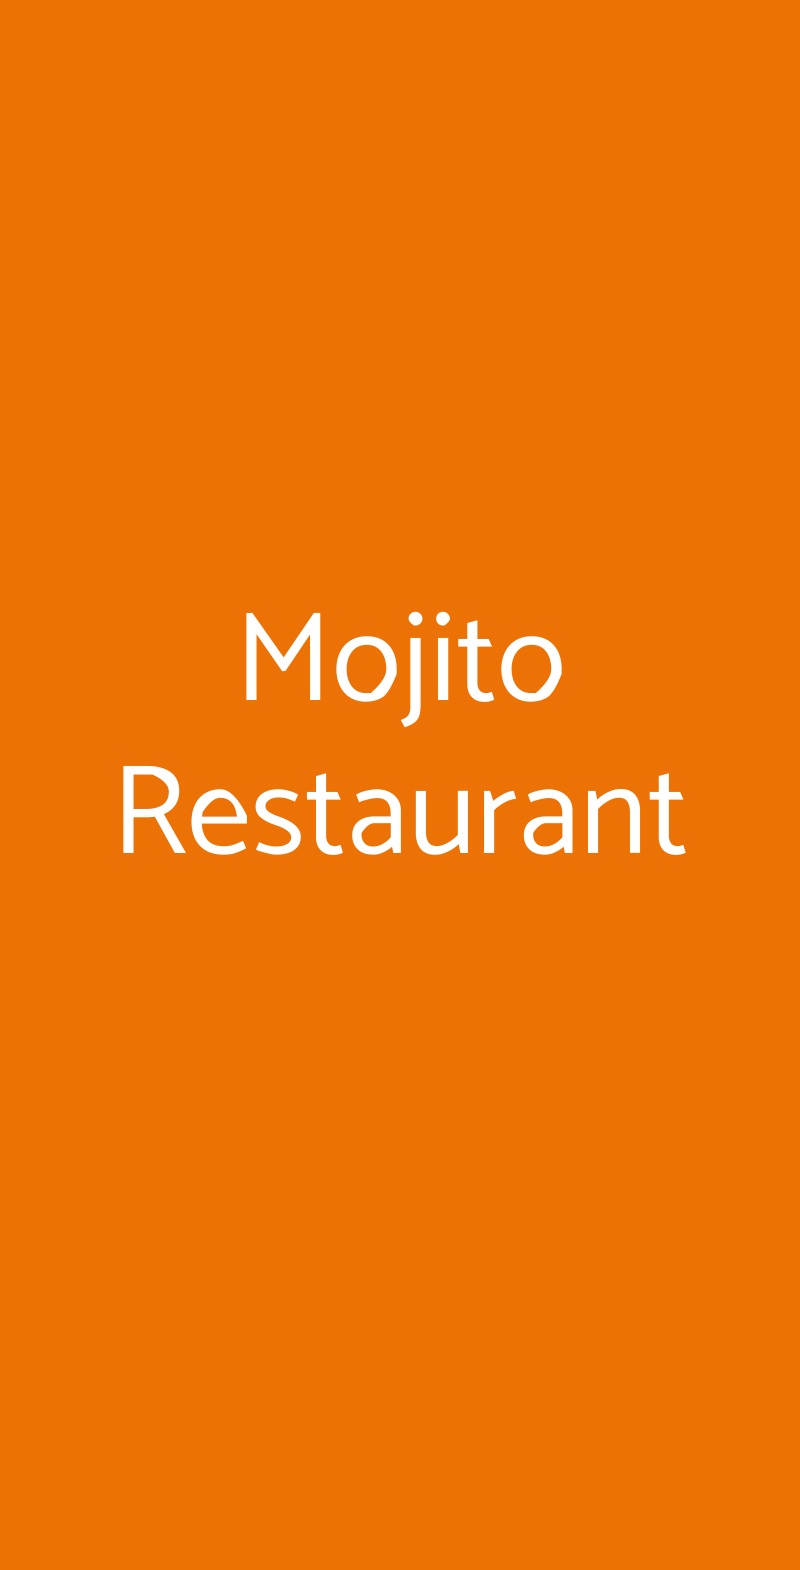 Mojito Restaurant Roma menù 1 pagina